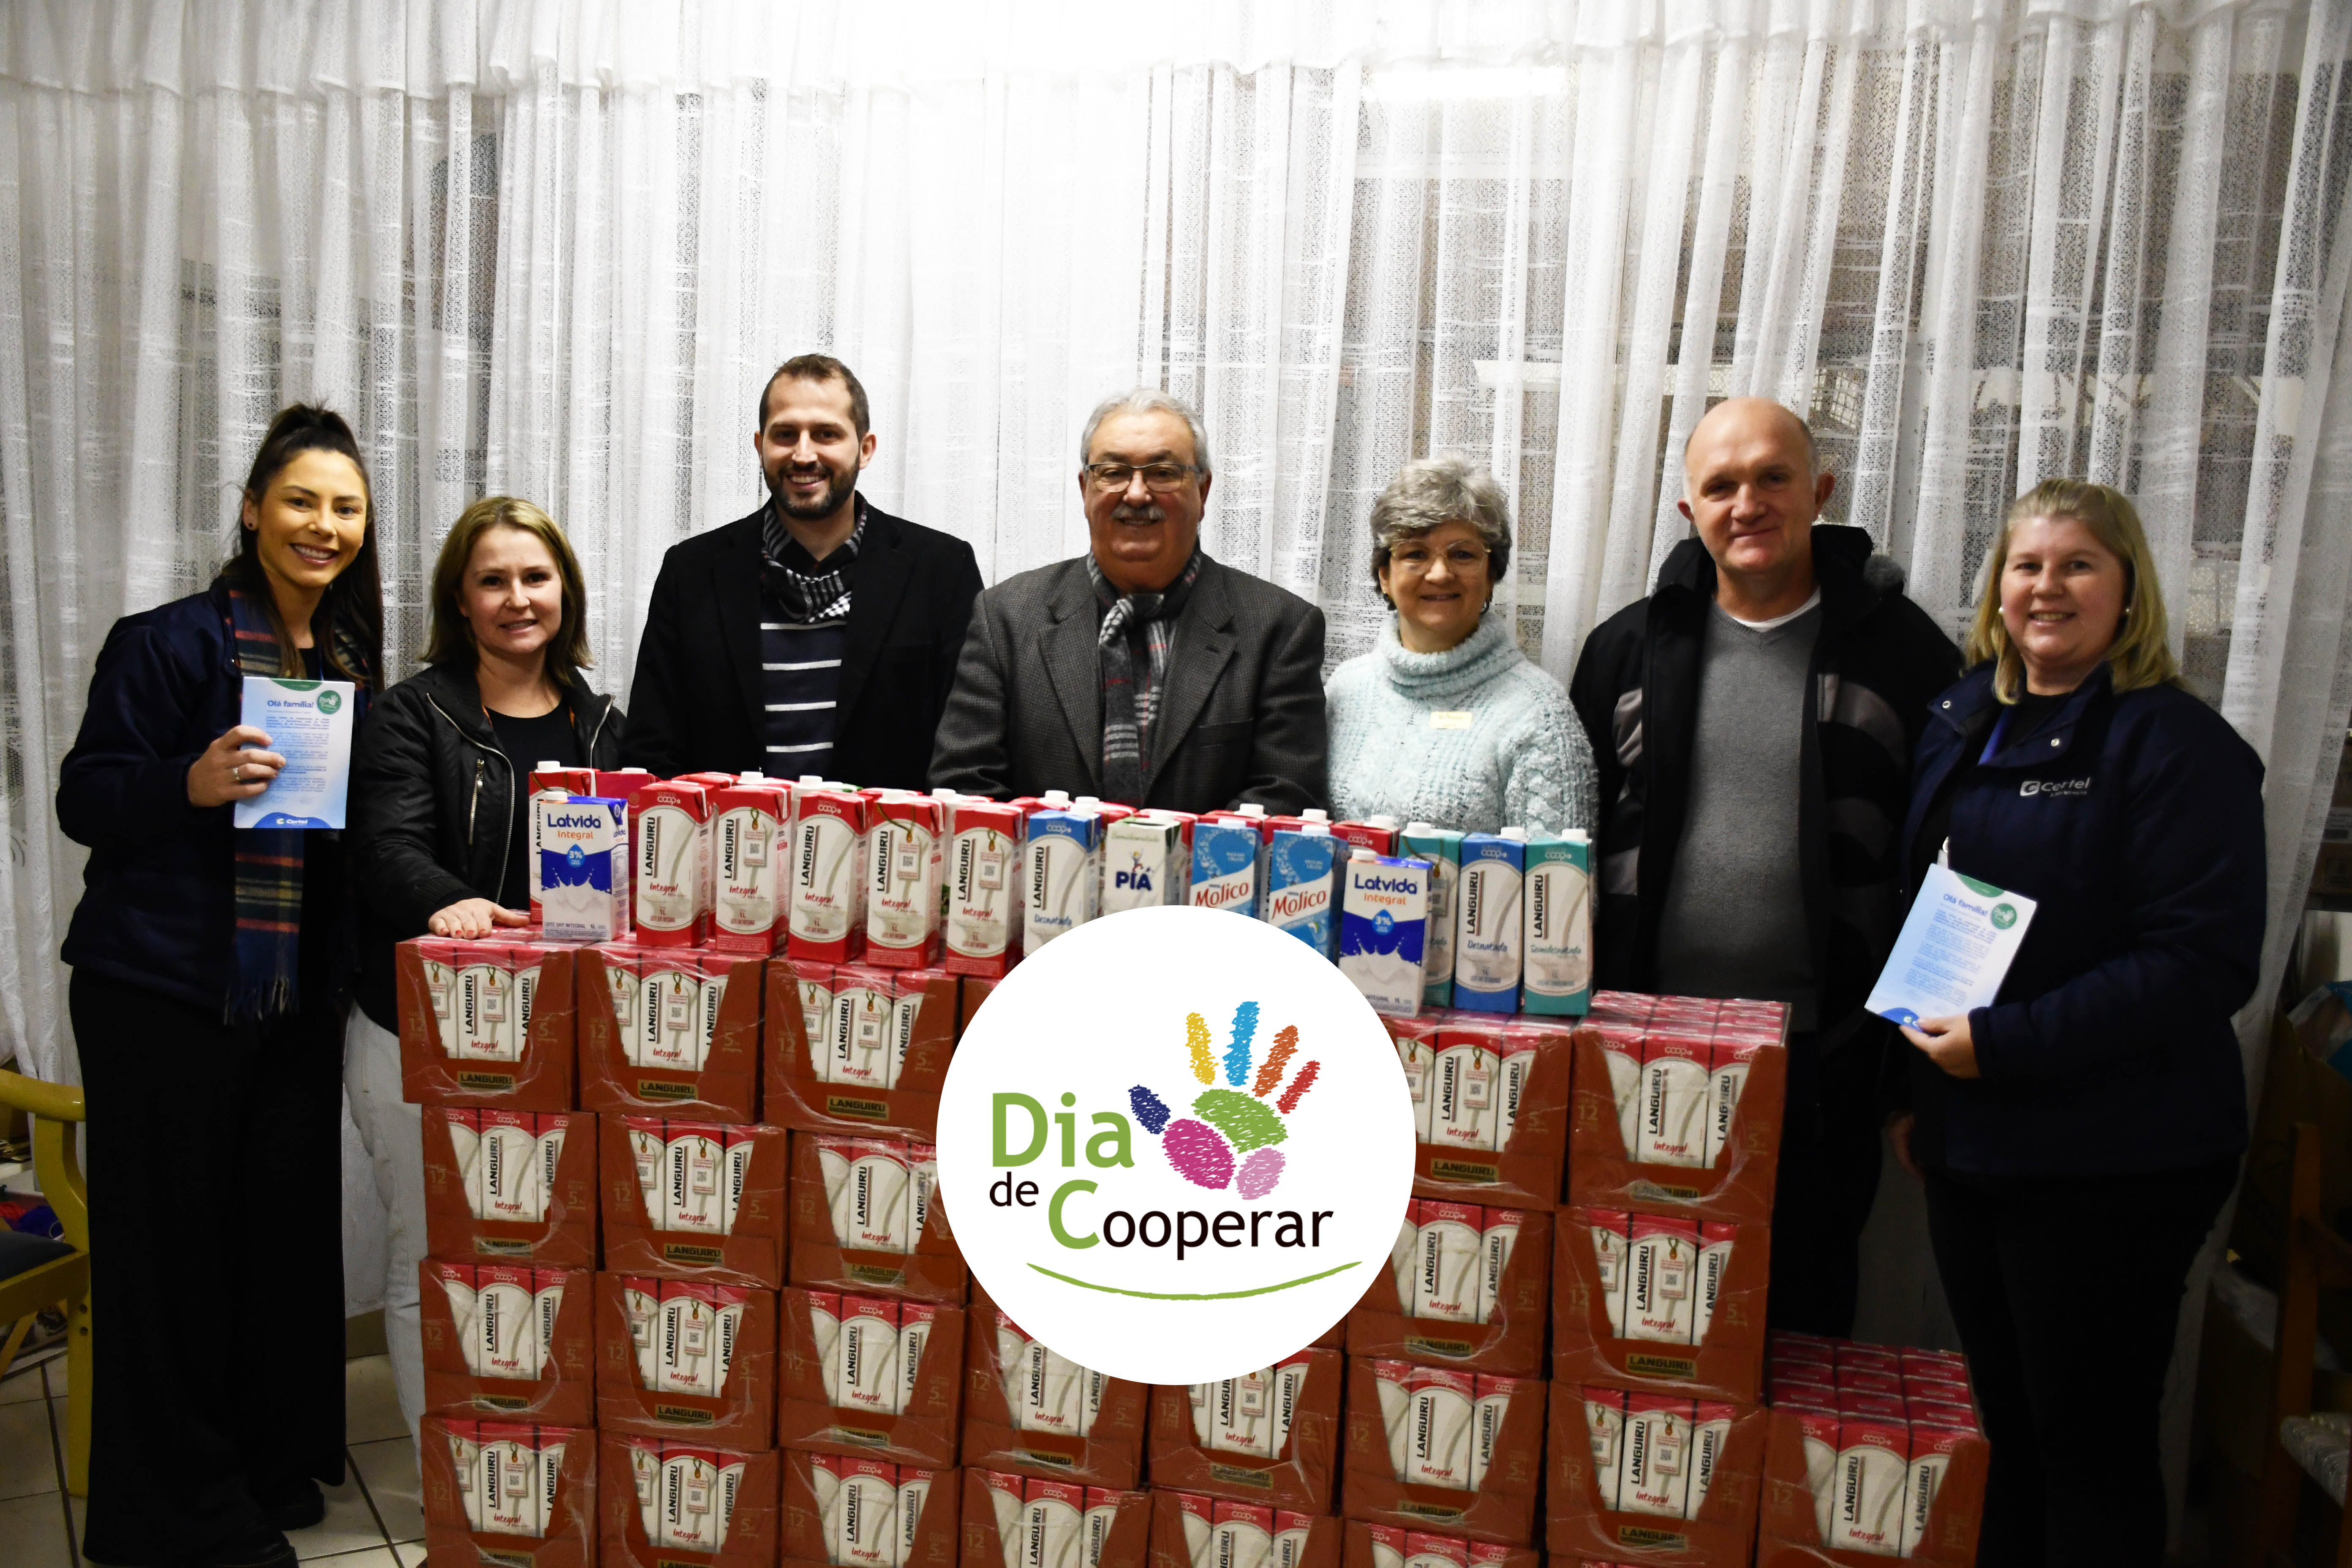 Dia de Cooperar: Certel doa 500 litros de leite para Horta Comunitária de Teutônia